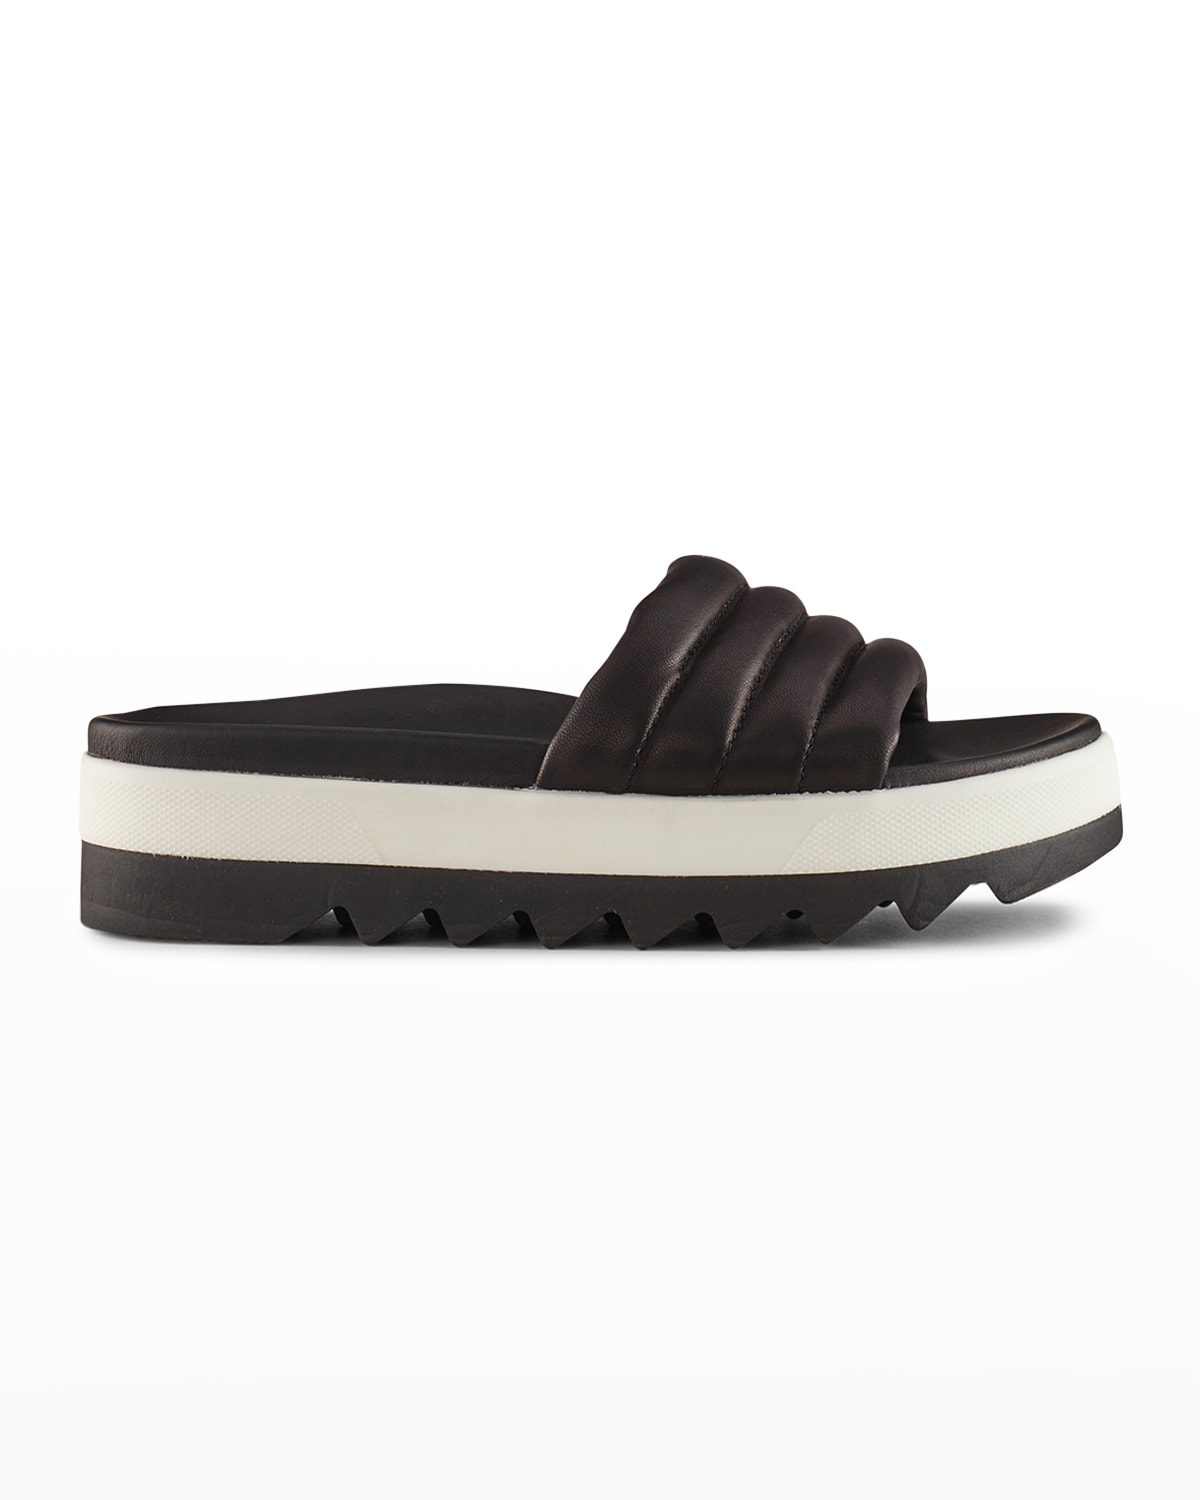 Cougar Prato Leather Flat Slide Sandals